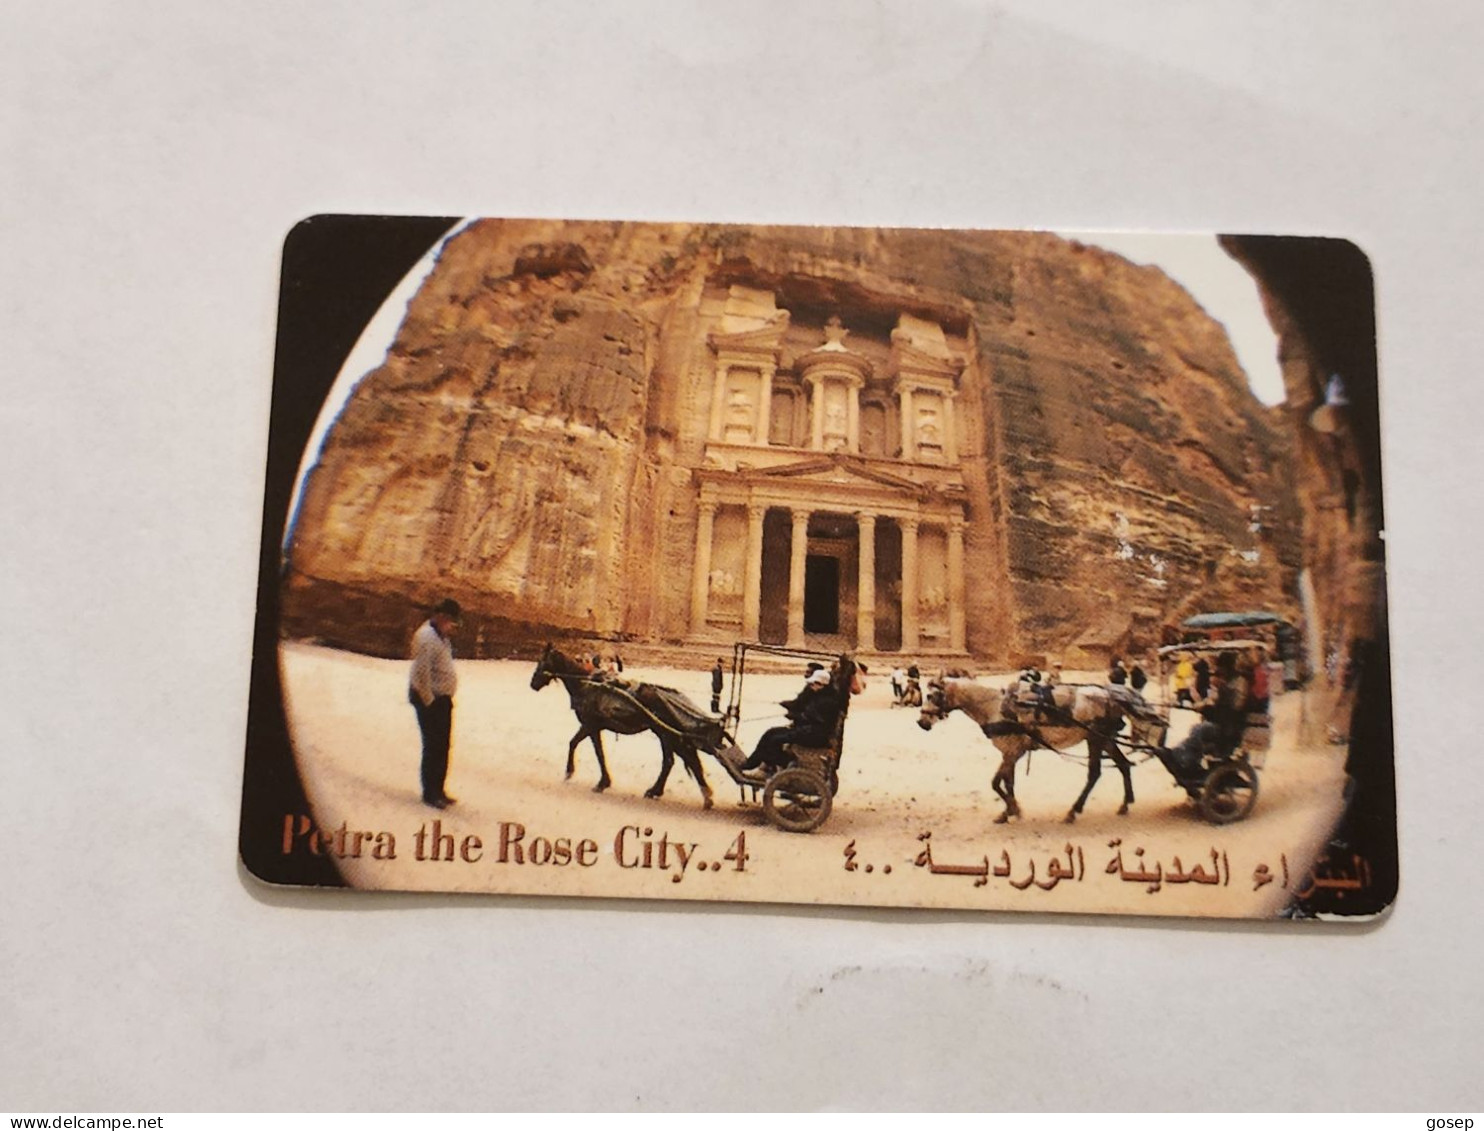 JORDAN-(JO-ALO-0078)-Petra-The Rose City4-(200)-(4000-187203)-(1JD)-(04/2001)-used Card+1card Prepiad Free - Jordanien